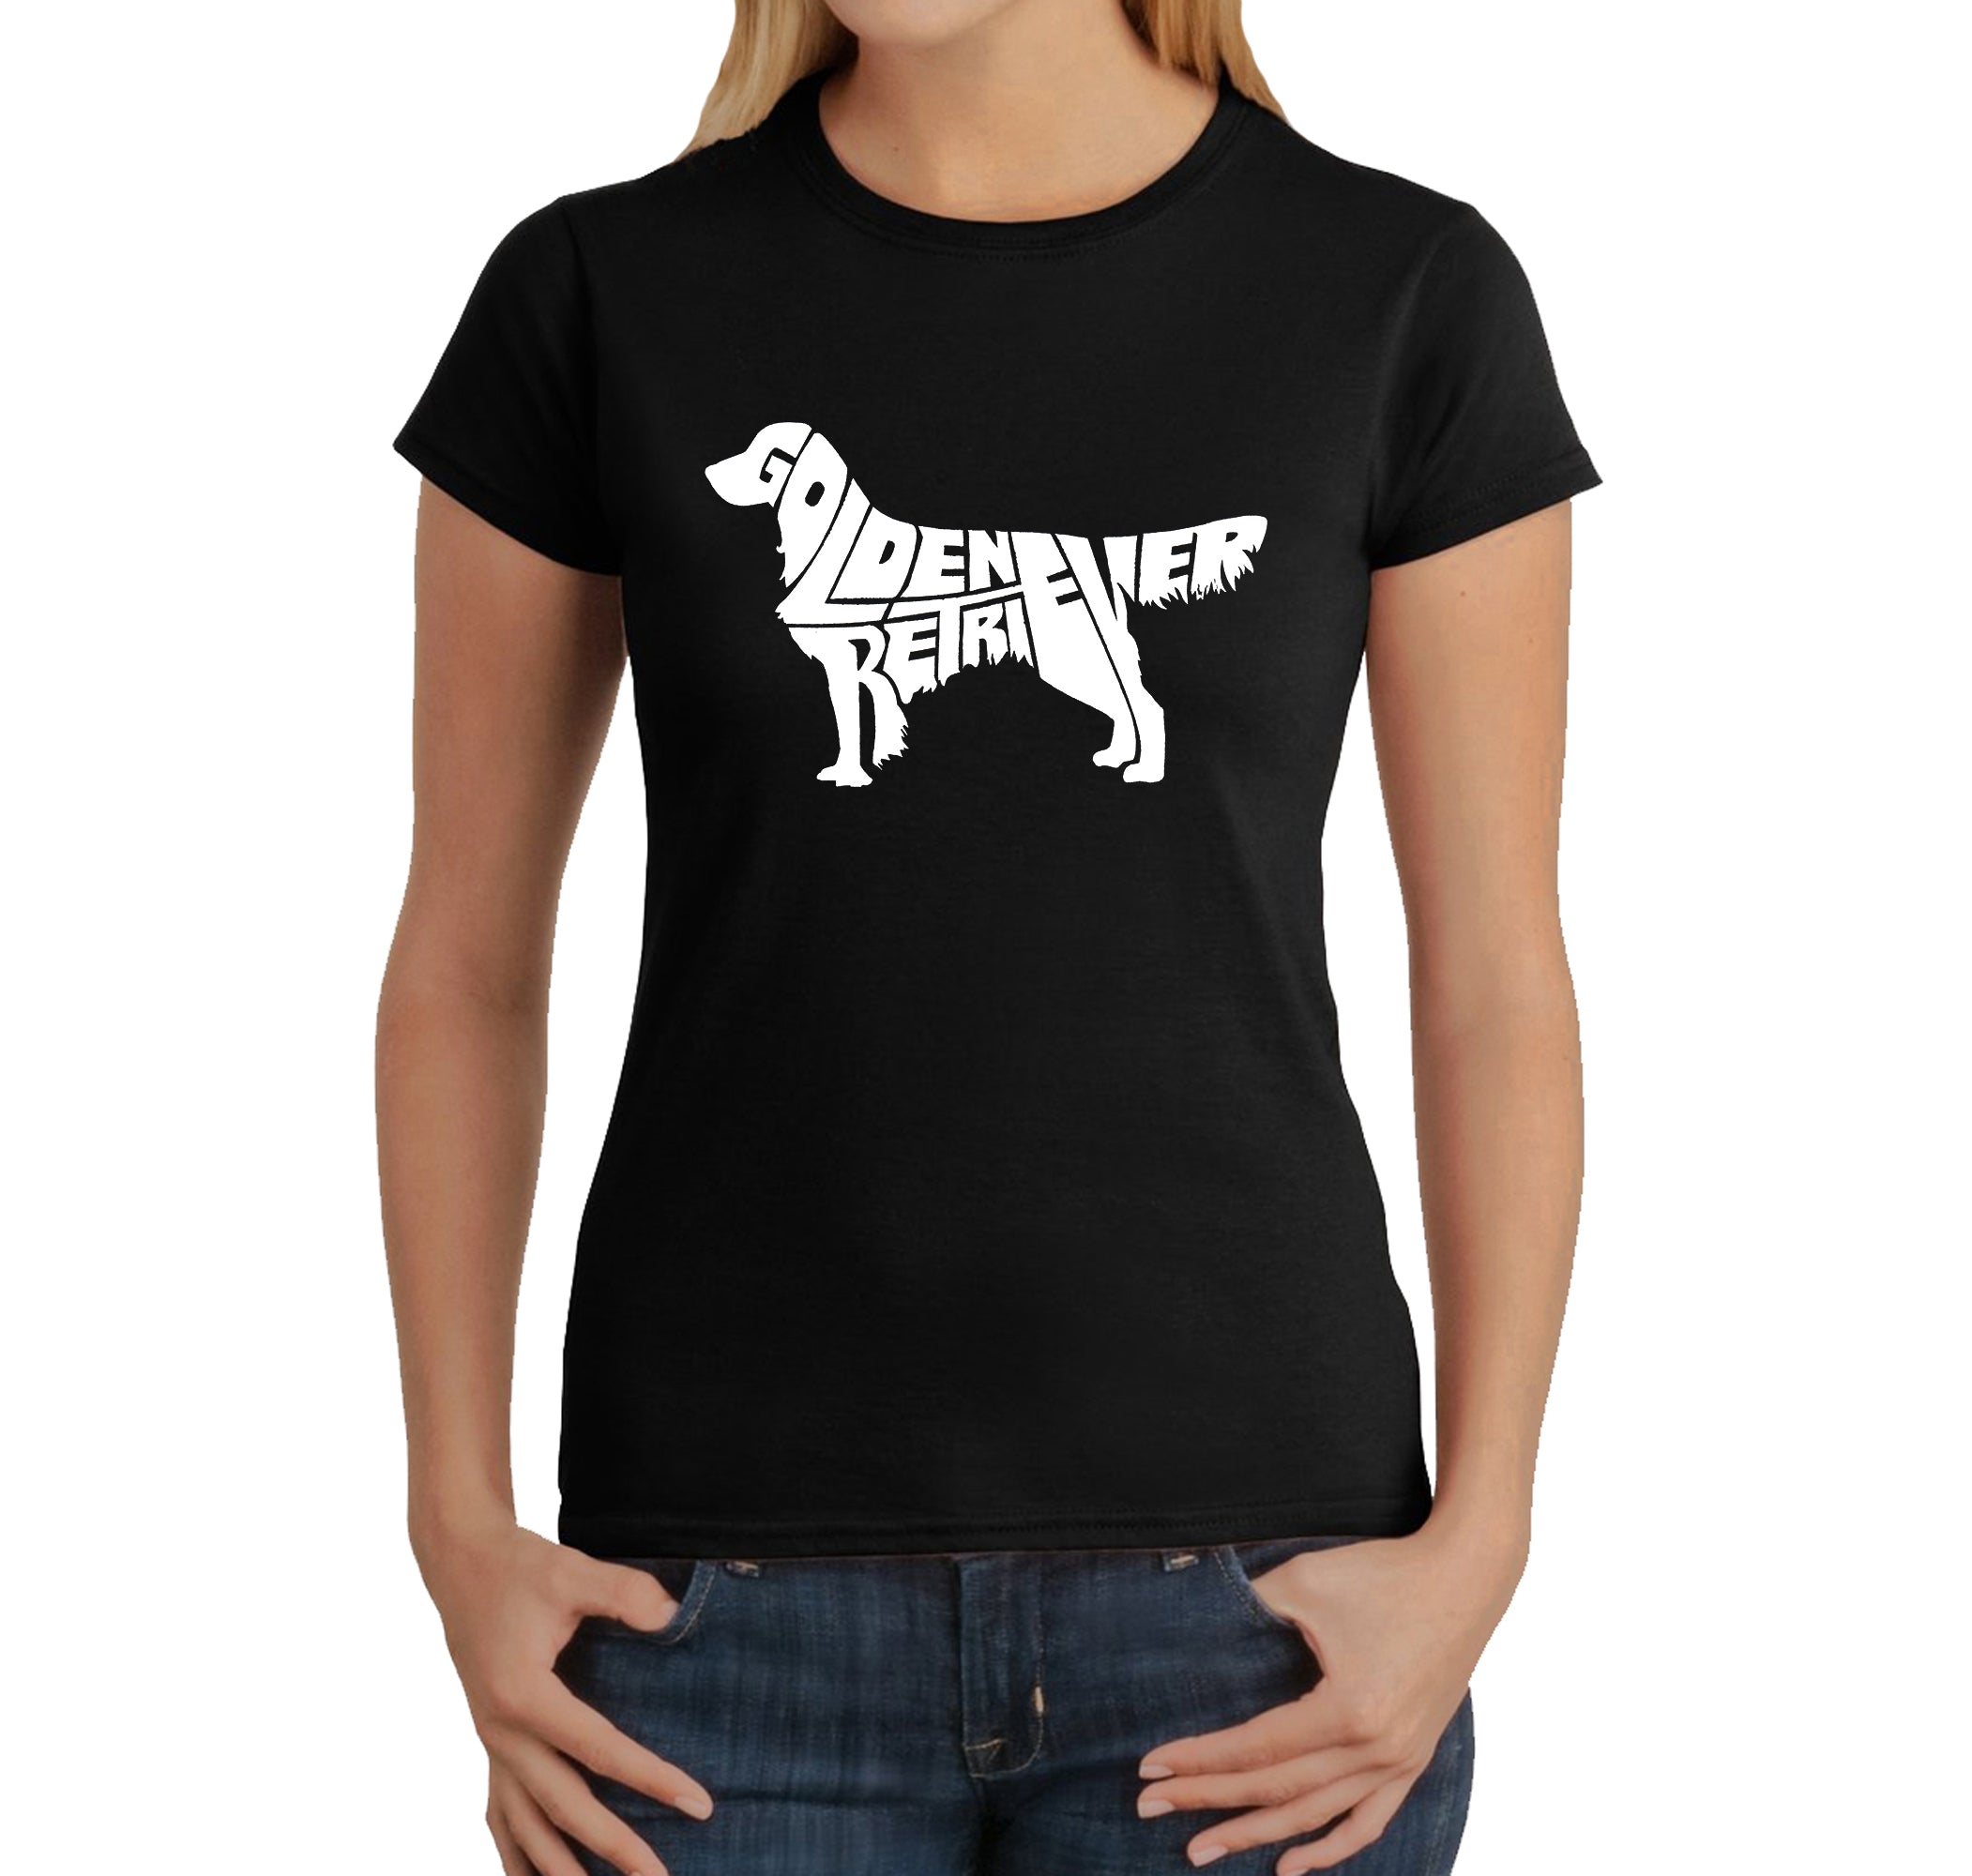 Golden Retriever - Women's Word Art T-Shirt - Black - Large